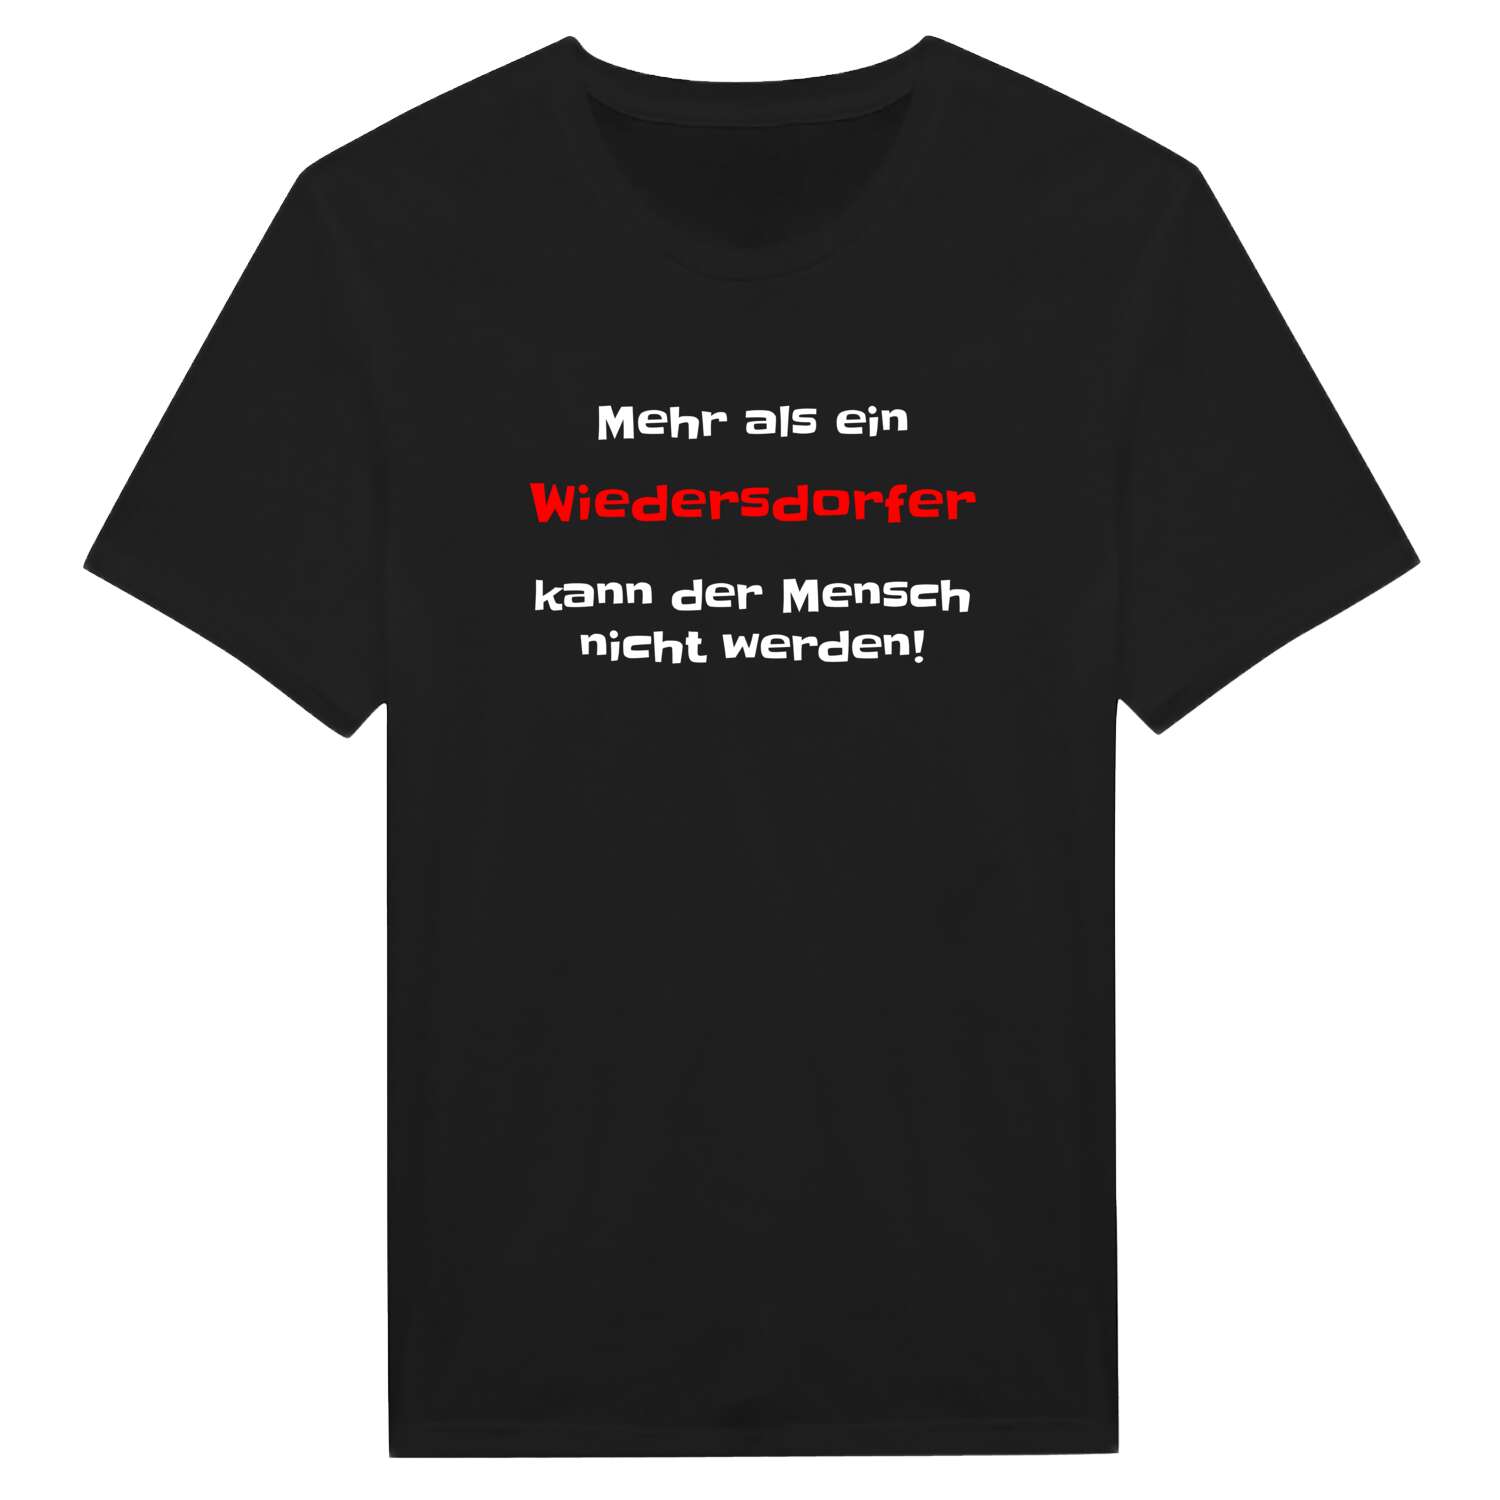 Wiedersdorf T-Shirt »Mehr als ein«